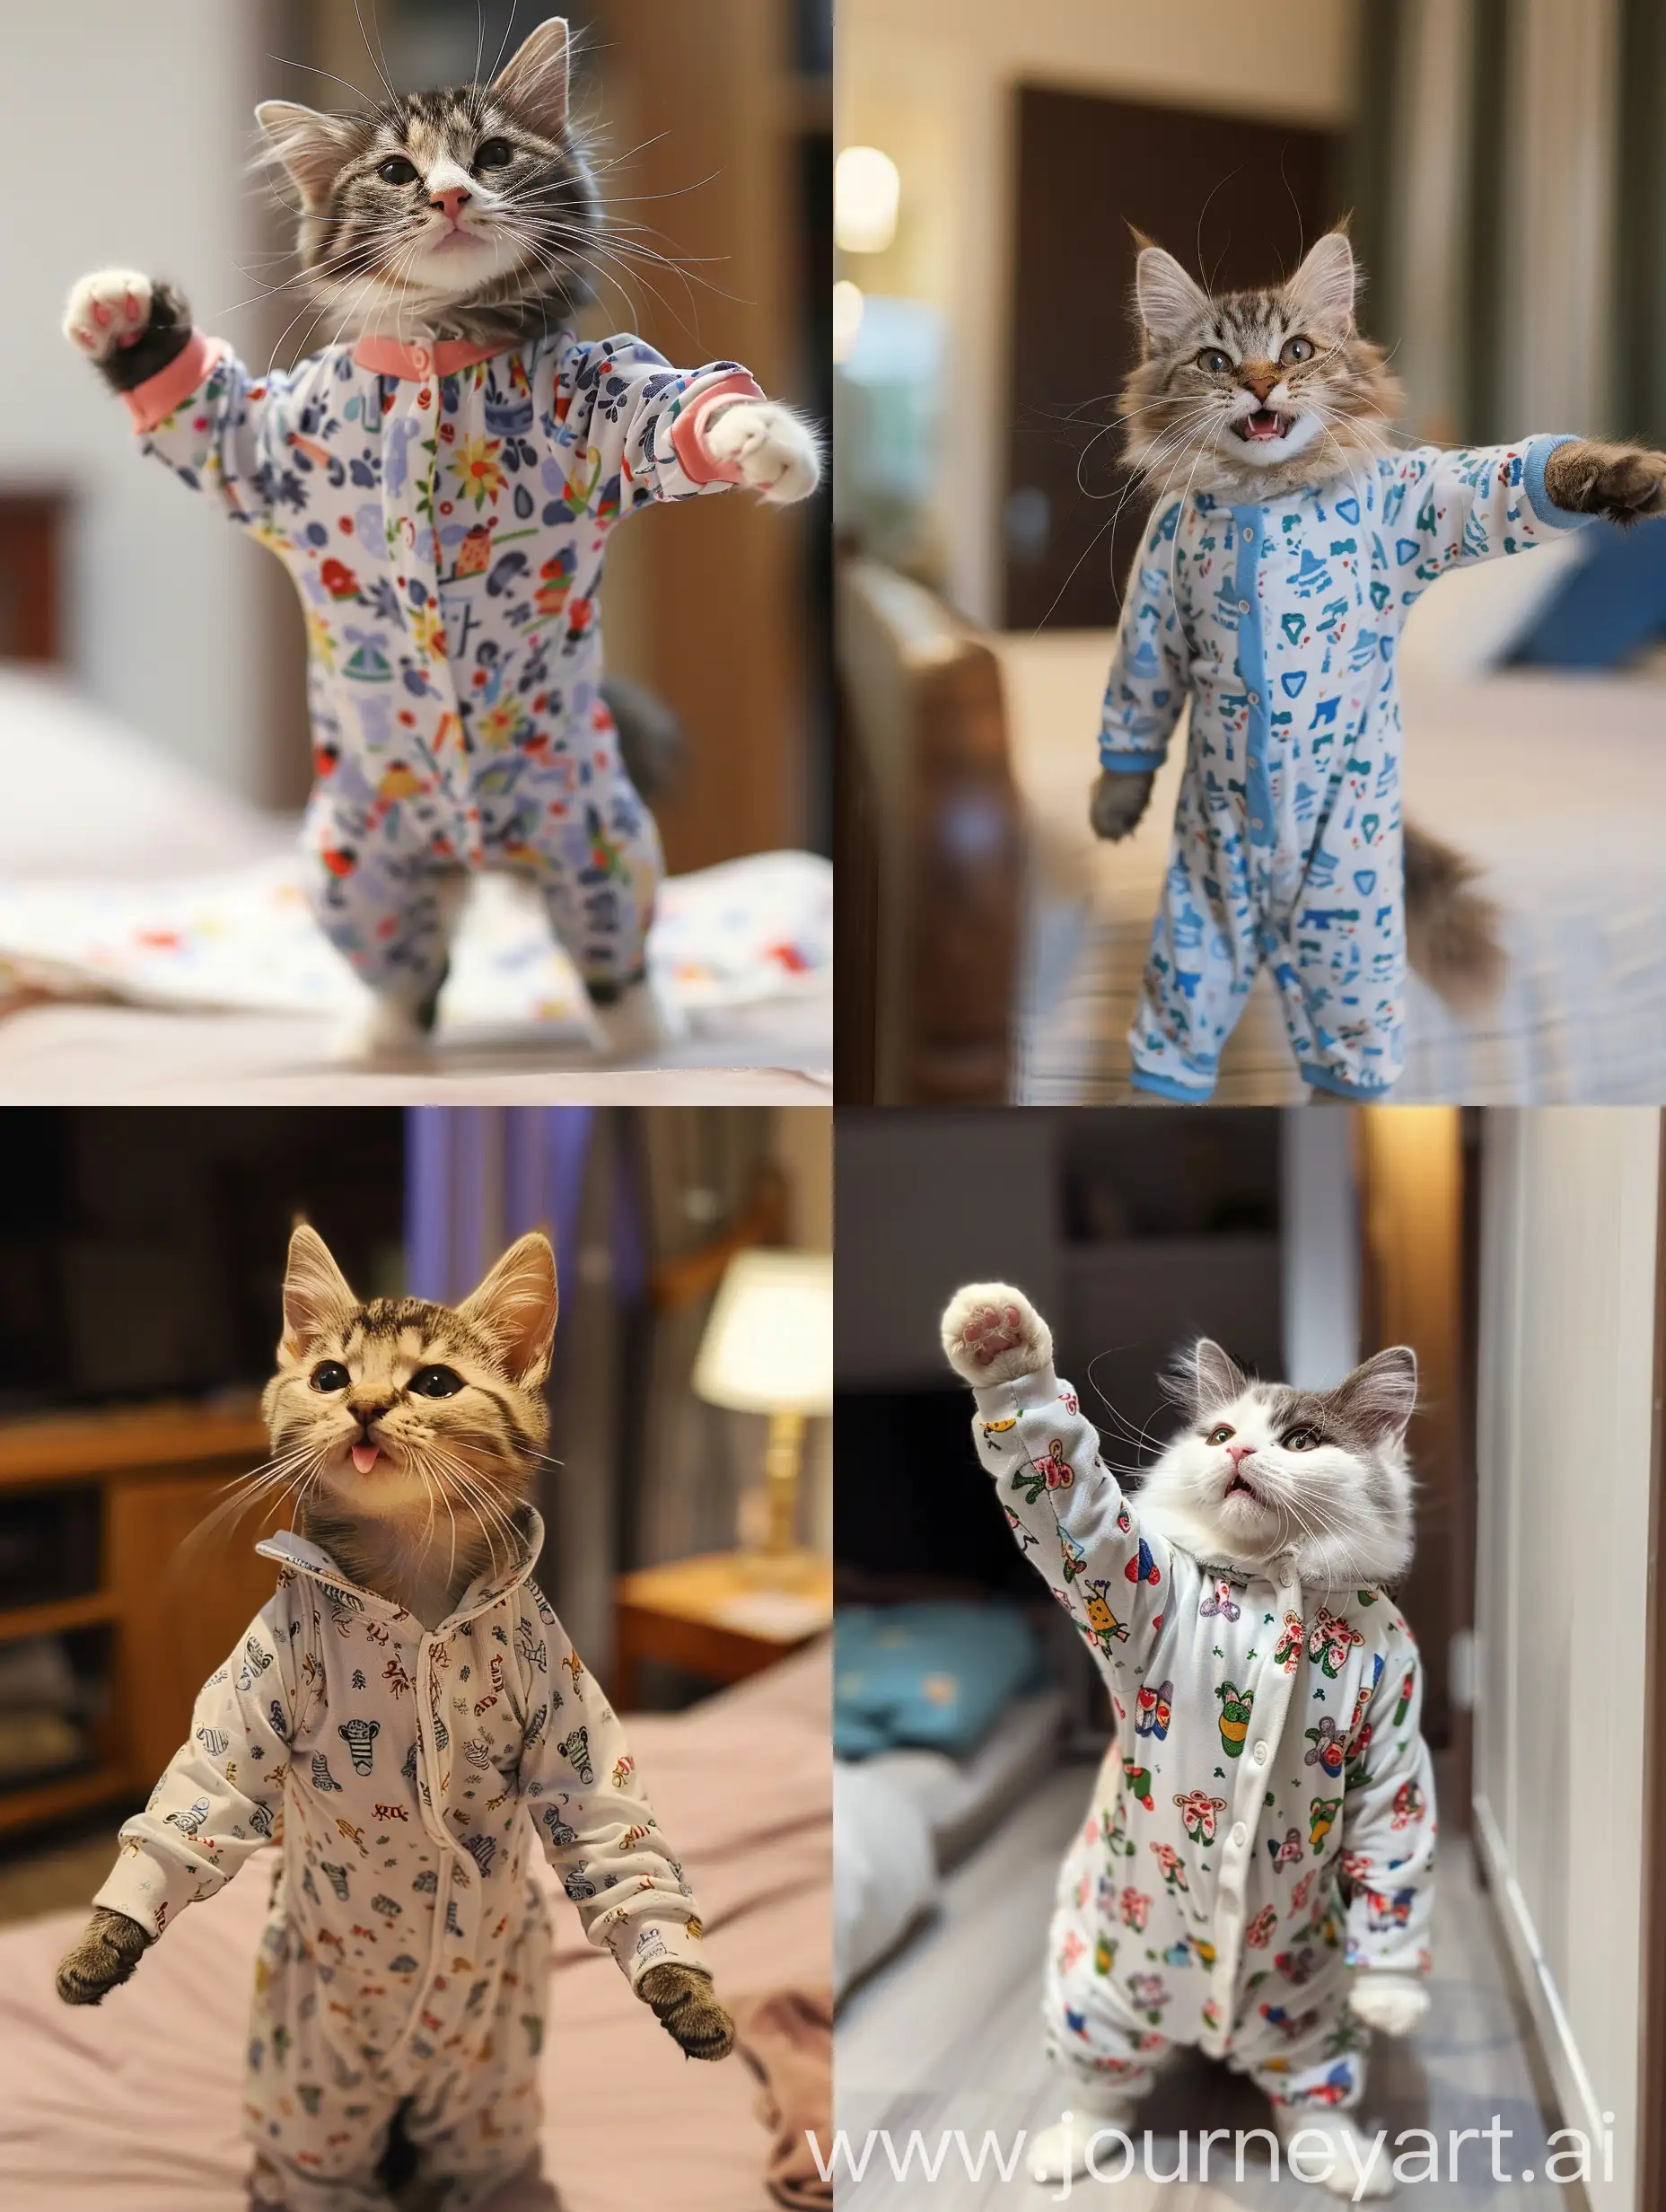 Festive-Cat-in-Pajamas-Joyfully-Leaps-During-Holiday-Celebration